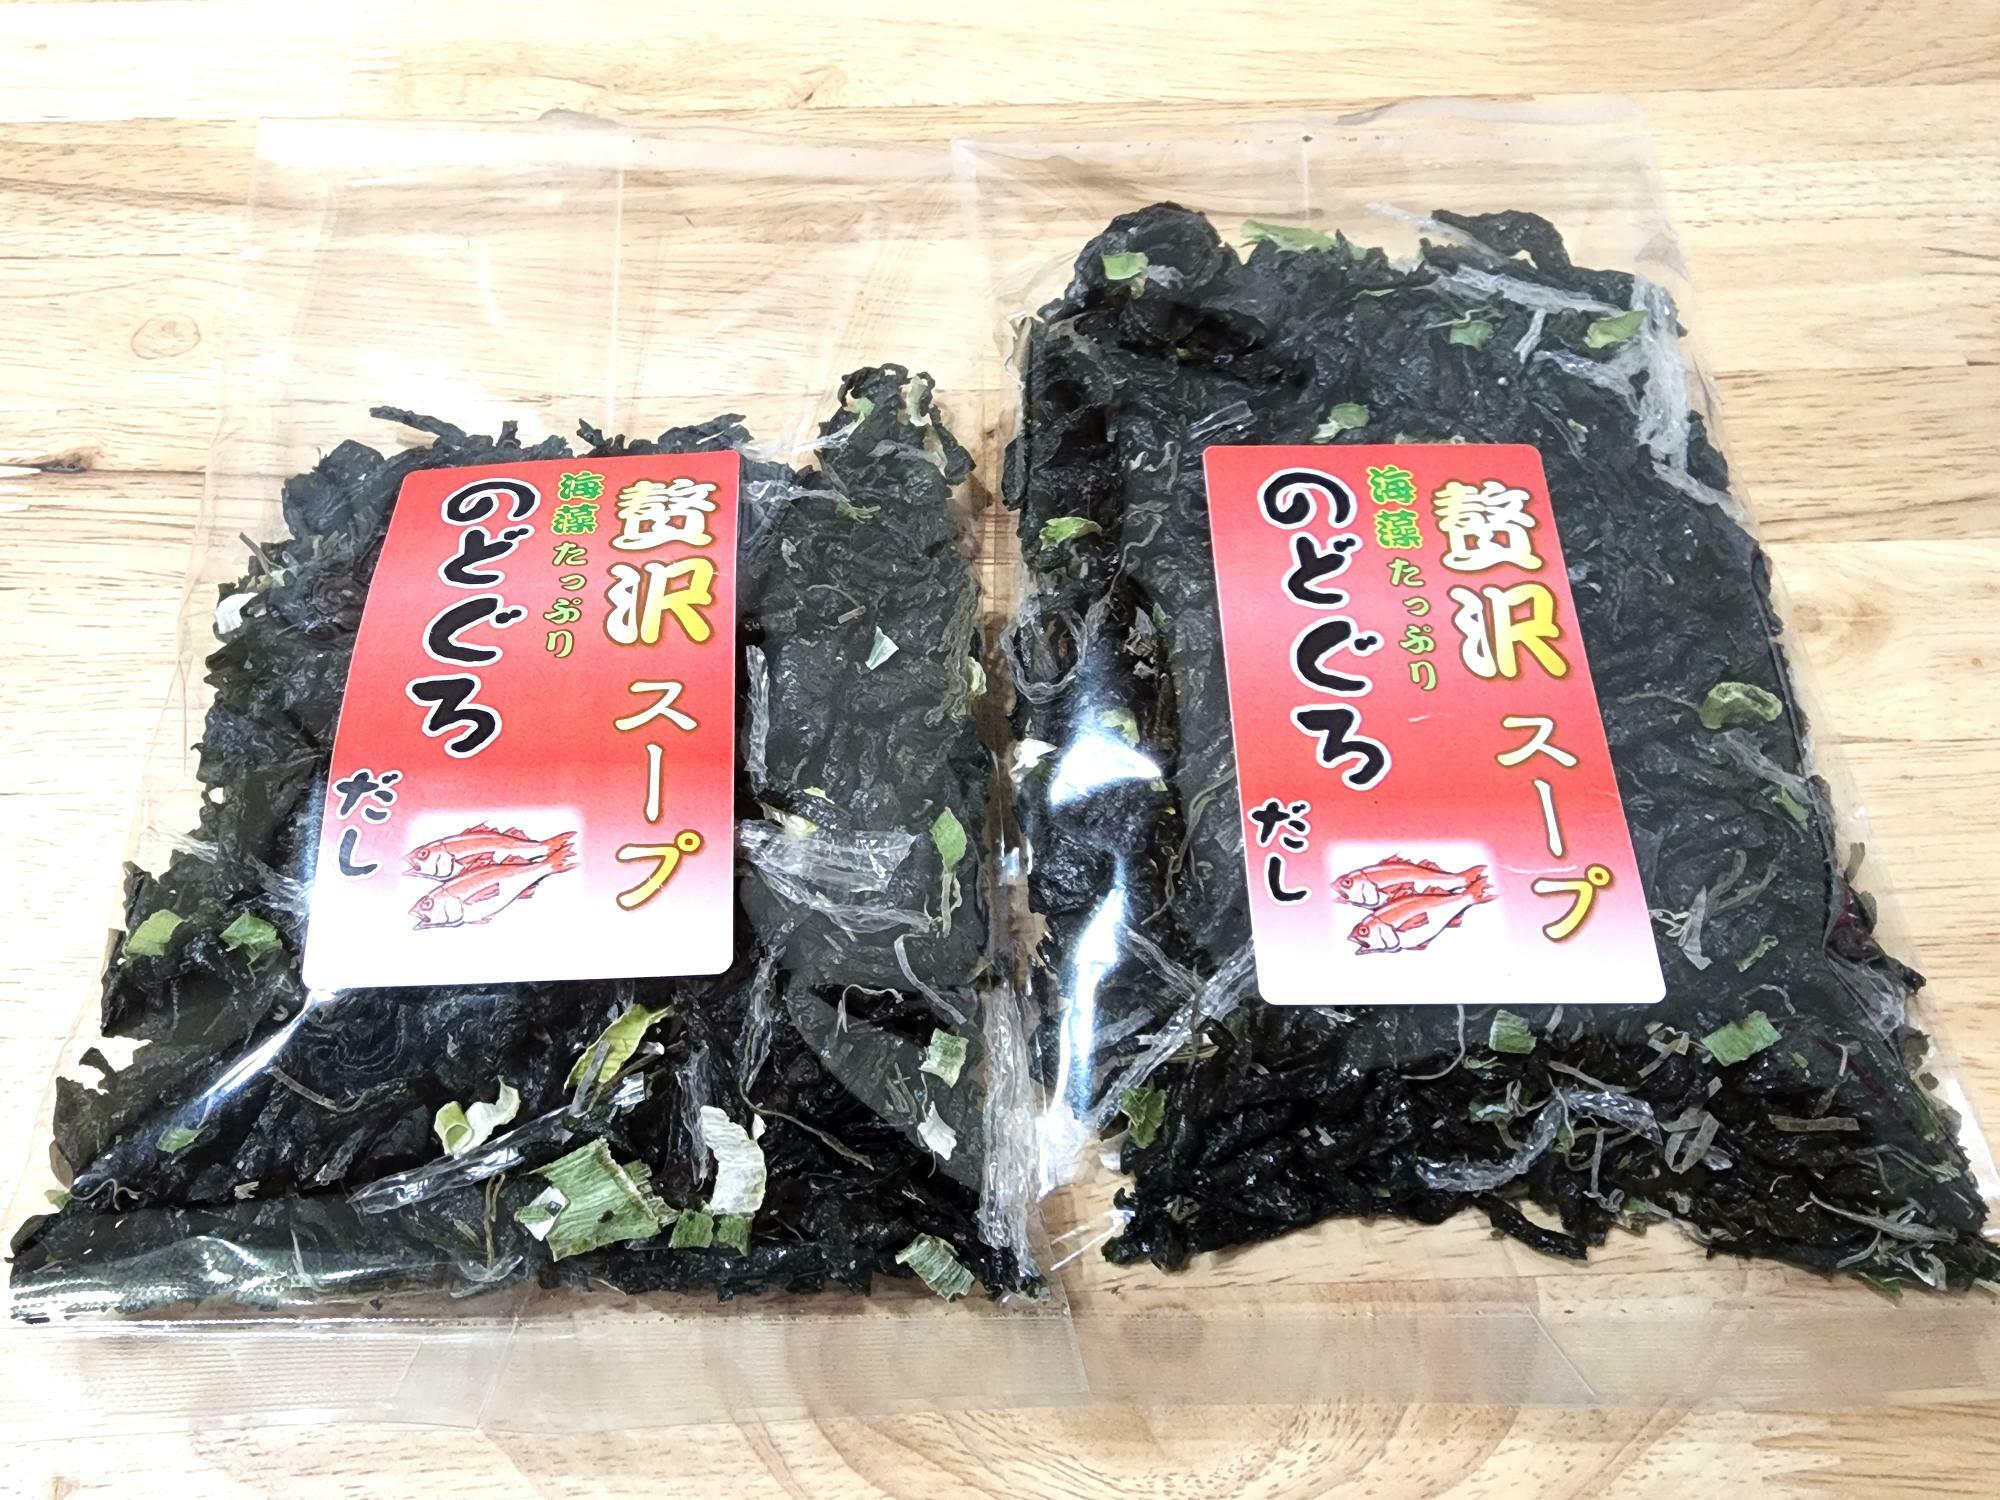 日本の味めぐり「北海道・長万部 ホットペッパー」で購入したスープ。